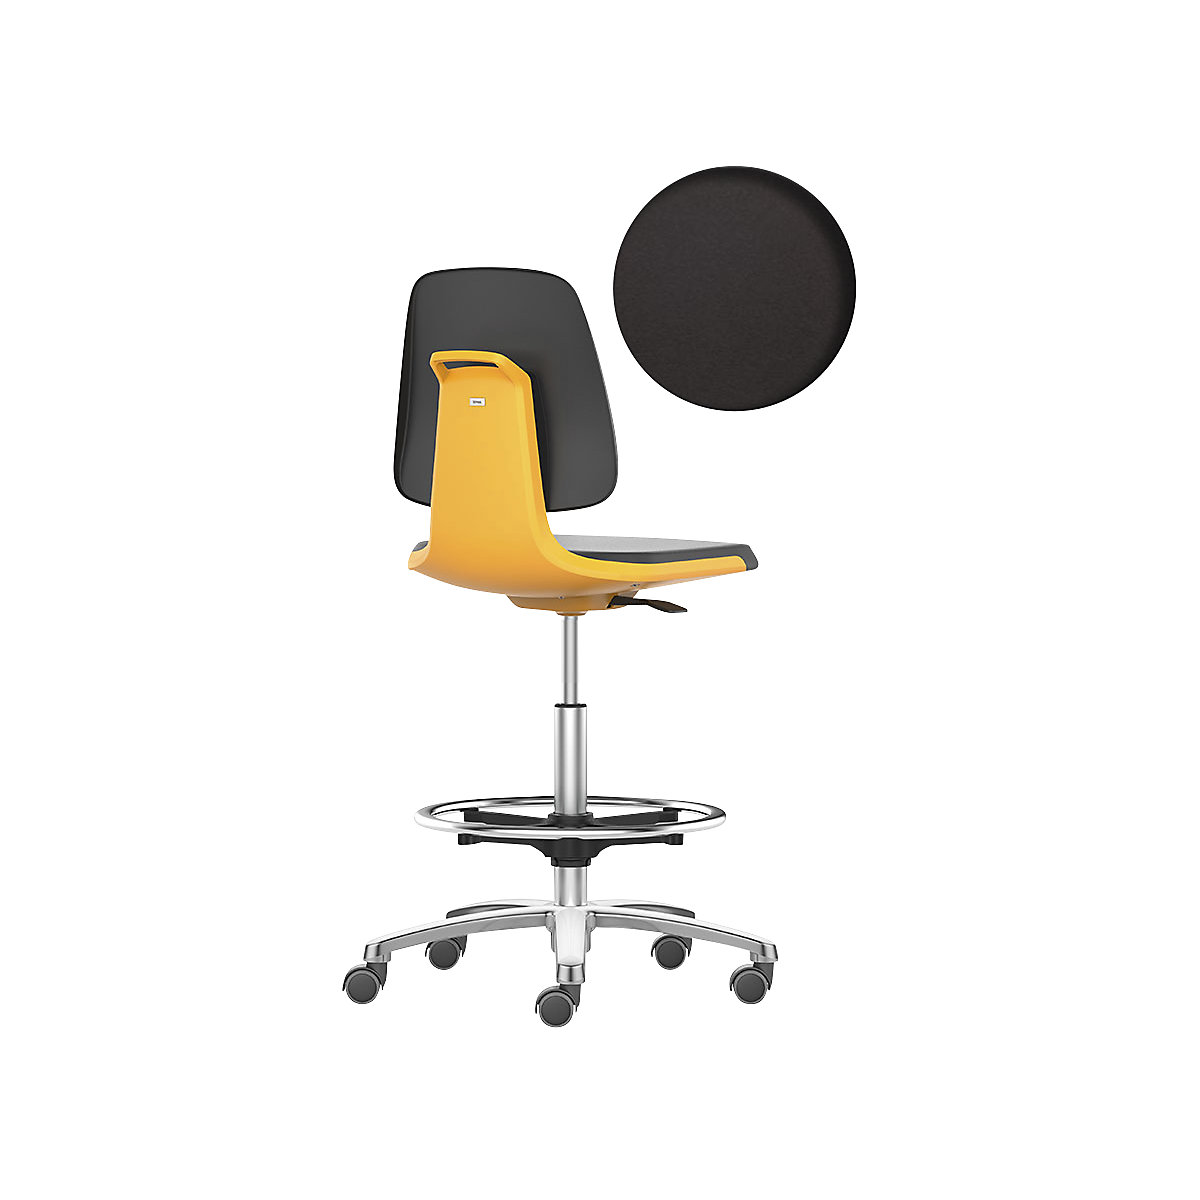 bimos – Siège d'atelier LABSIT, siège haut avec roulettes blocables et repose-pieds circulaire, assise en mousse PU, orange